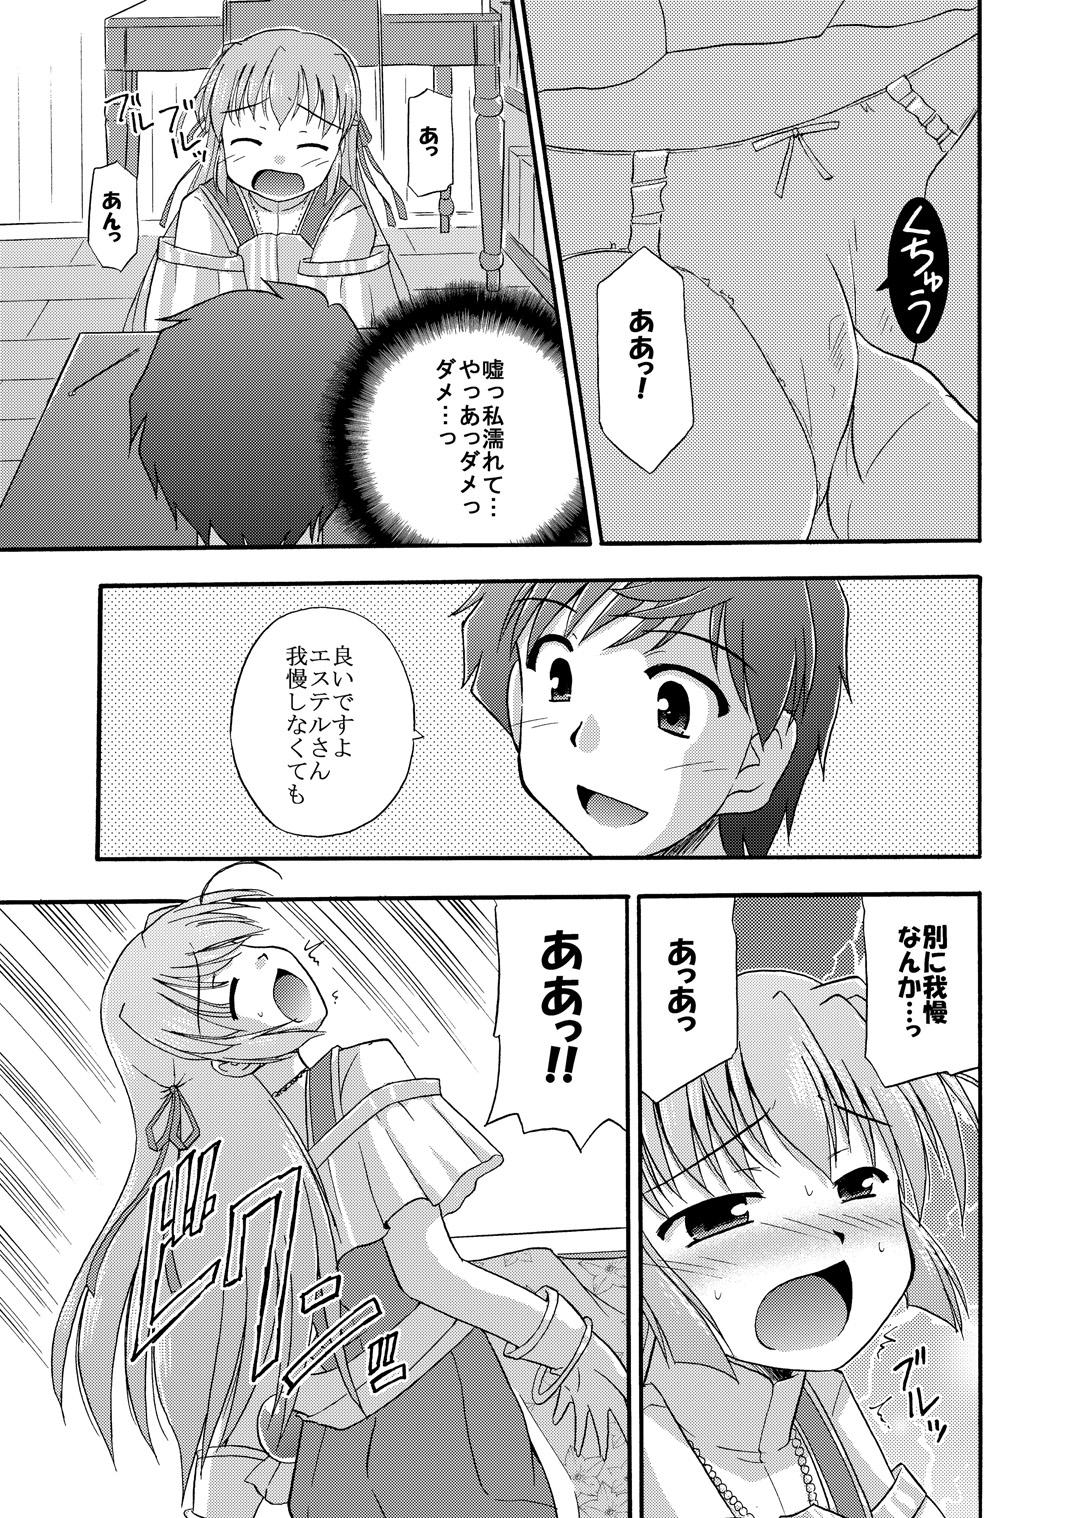 Petite Teenager Chikyuu de no Sugoshikata - Yoake mae yori ruriiro na Wives - Page 10